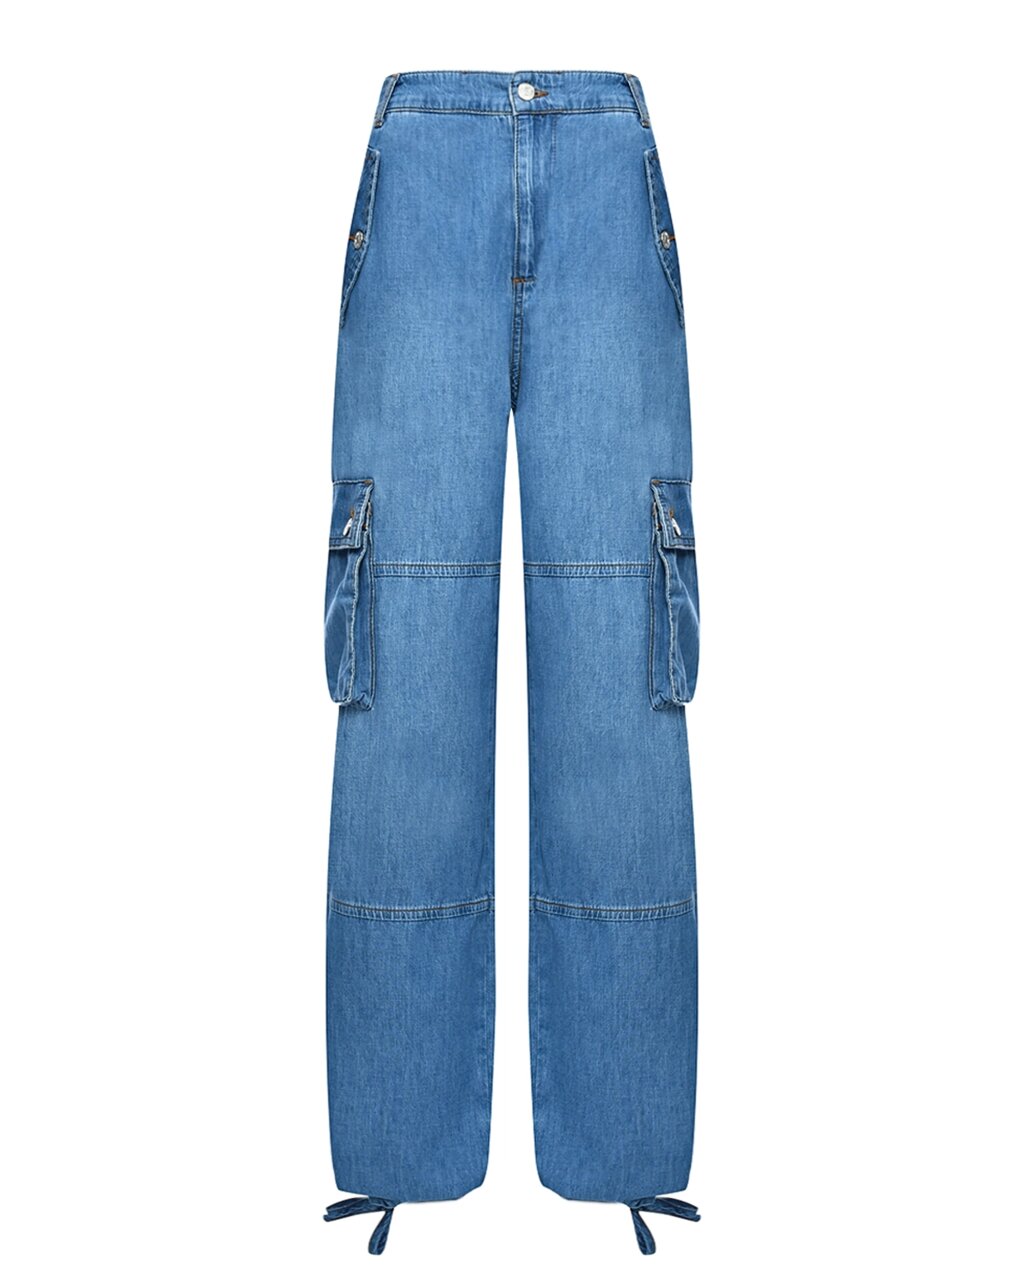 Джинсы с карманами-карго, синие Mo5ch1no Jeans от компании Admi - фото 1